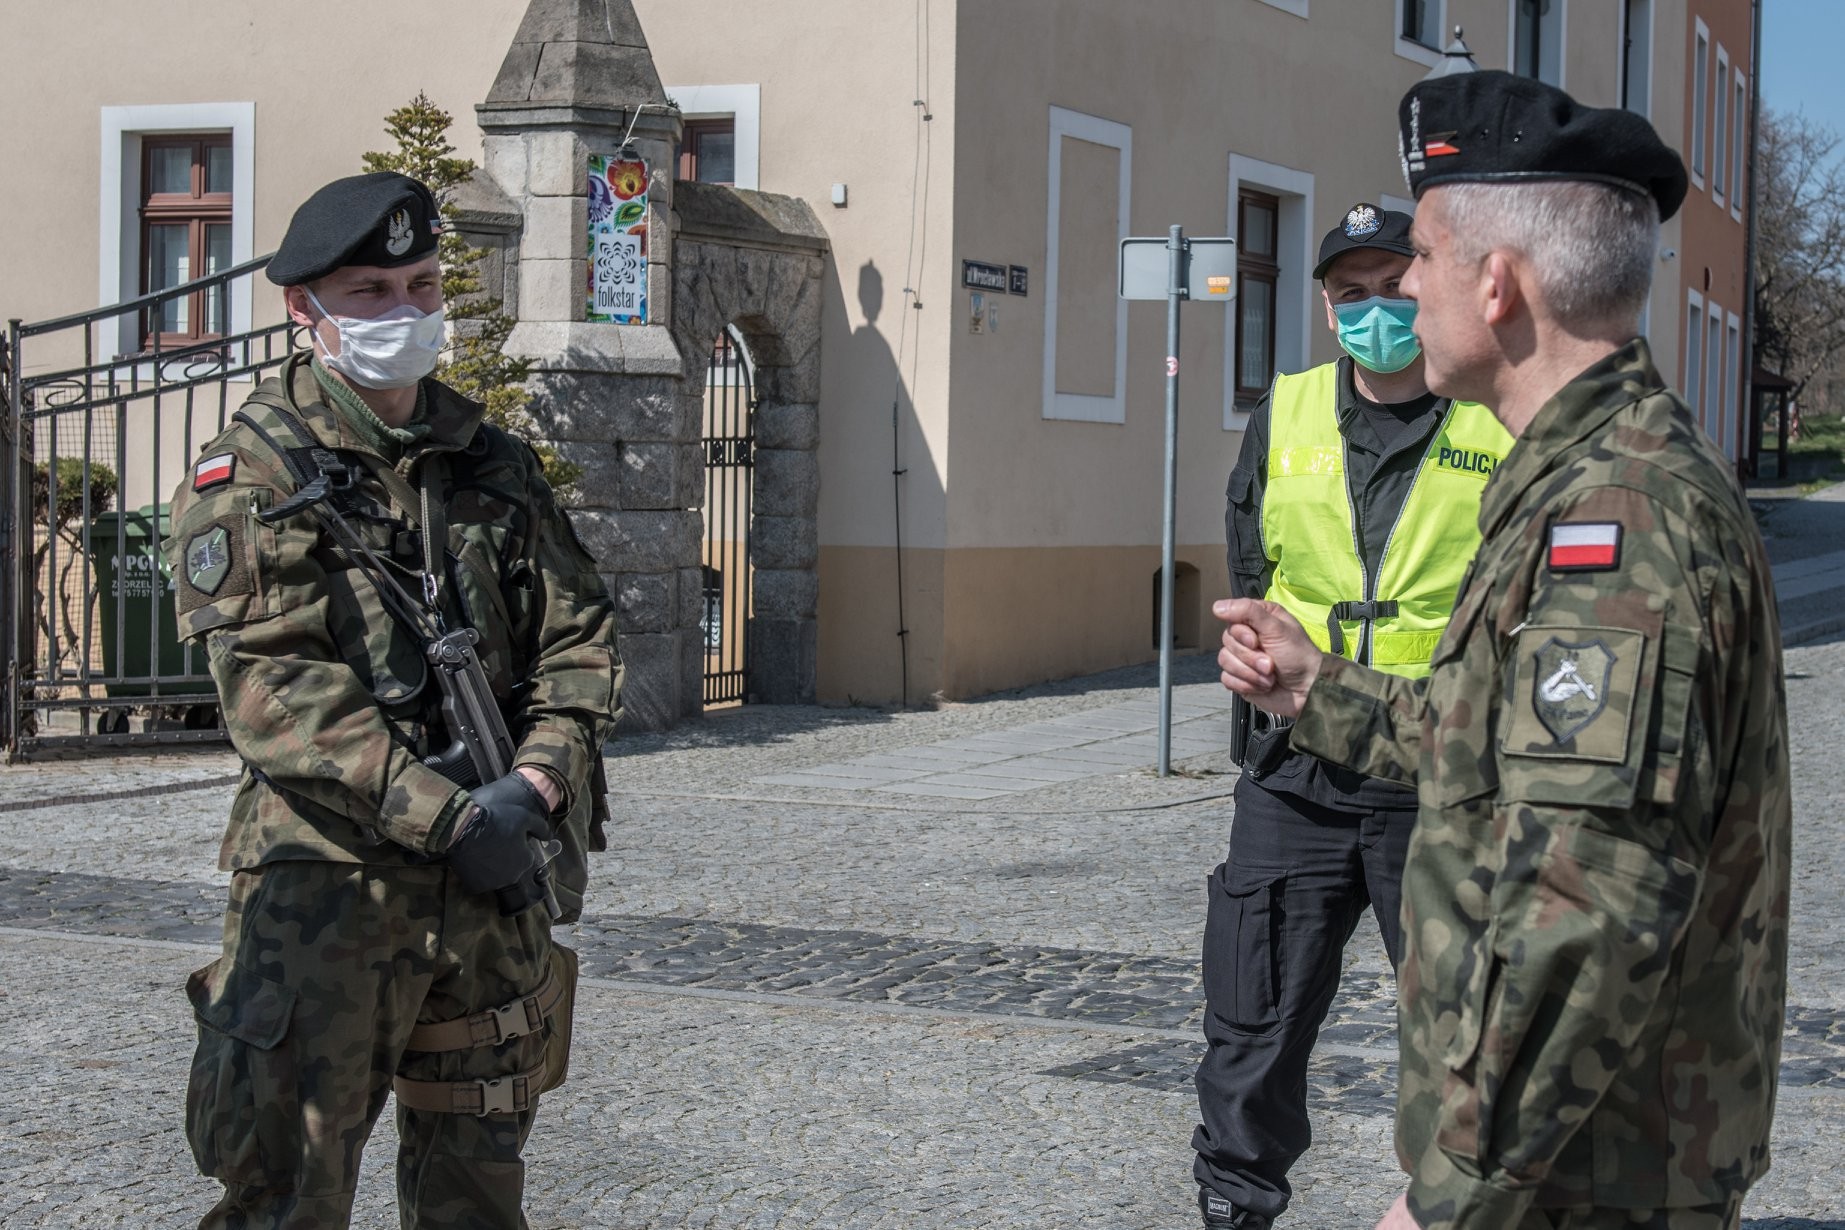 Wojsko poniosło koszty związane np. z zakupami dodatkowych środków ochronnych, a od marca do czerwca było zaangażowane na granicach. Fot. 11 Lubuska Dywizja Kawalerii Pancernej/Facebook.